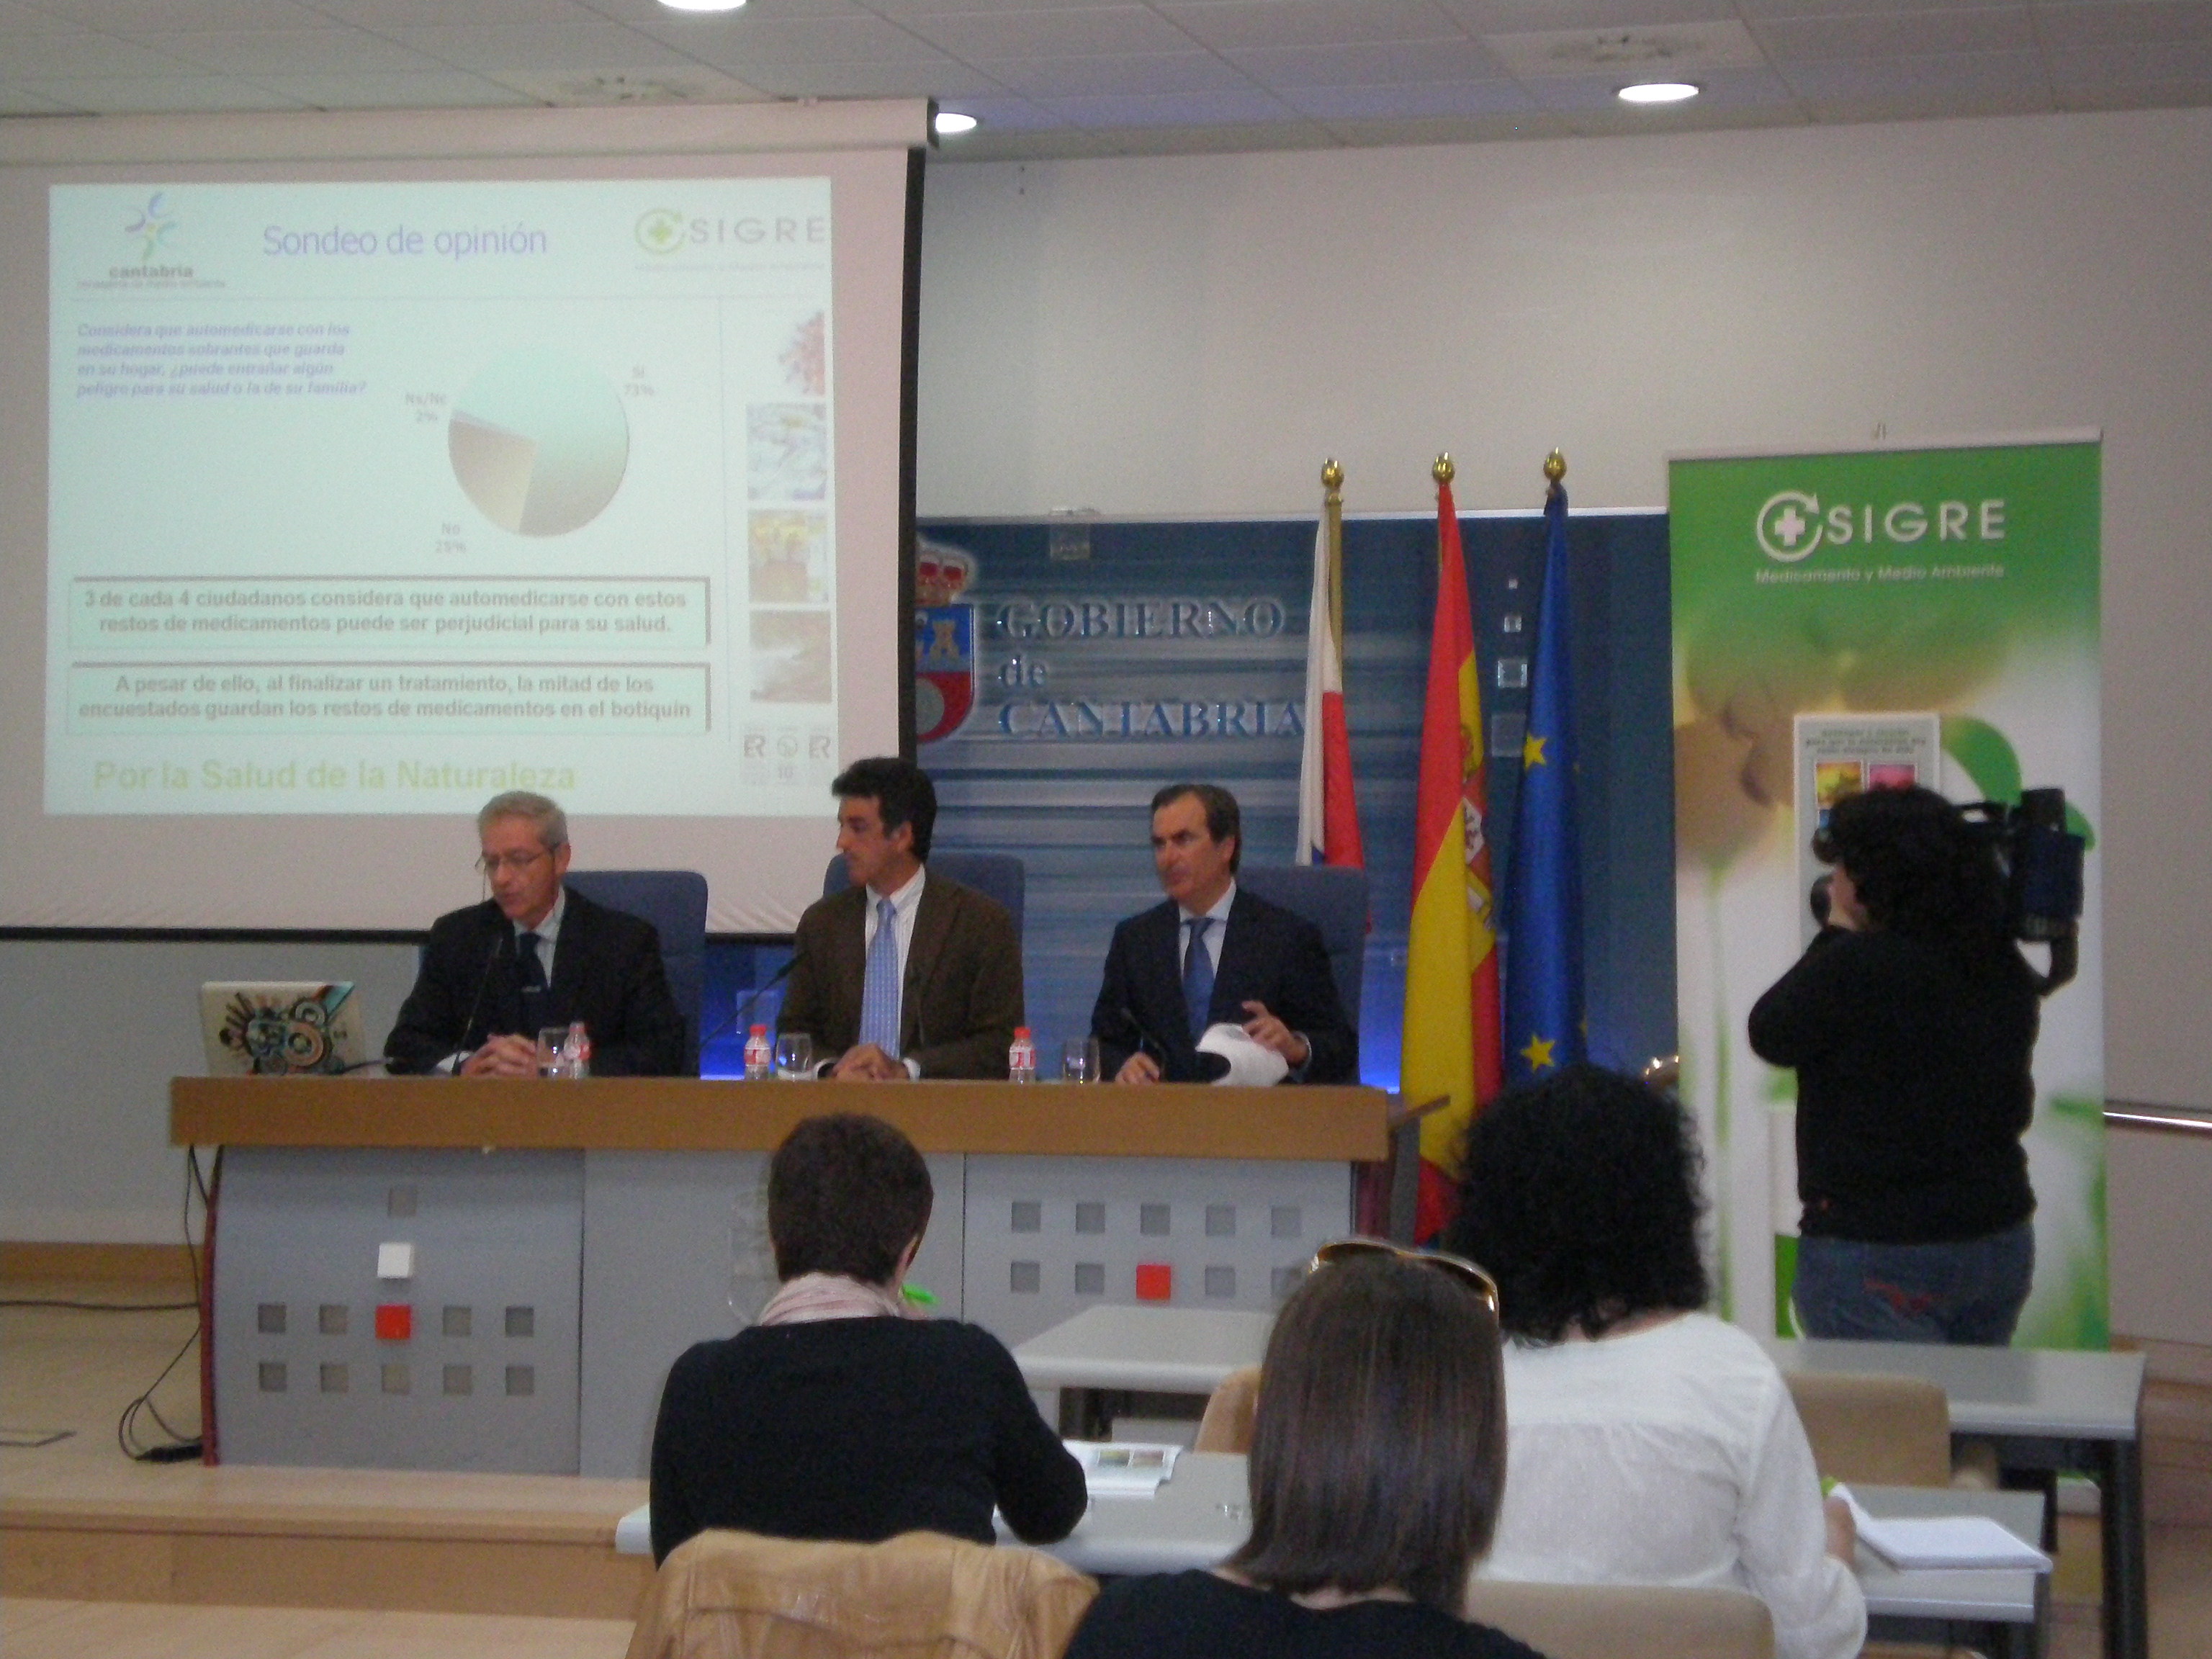 El Consejero de Medio Ambiente de Cantabria, el Presidente del Colegio de Farmacéuticos de Cantabria y el Director General de SIGRE presentaron los datos de funcionamiento de SIGRE en esa Comunidad Autónoma en 2008